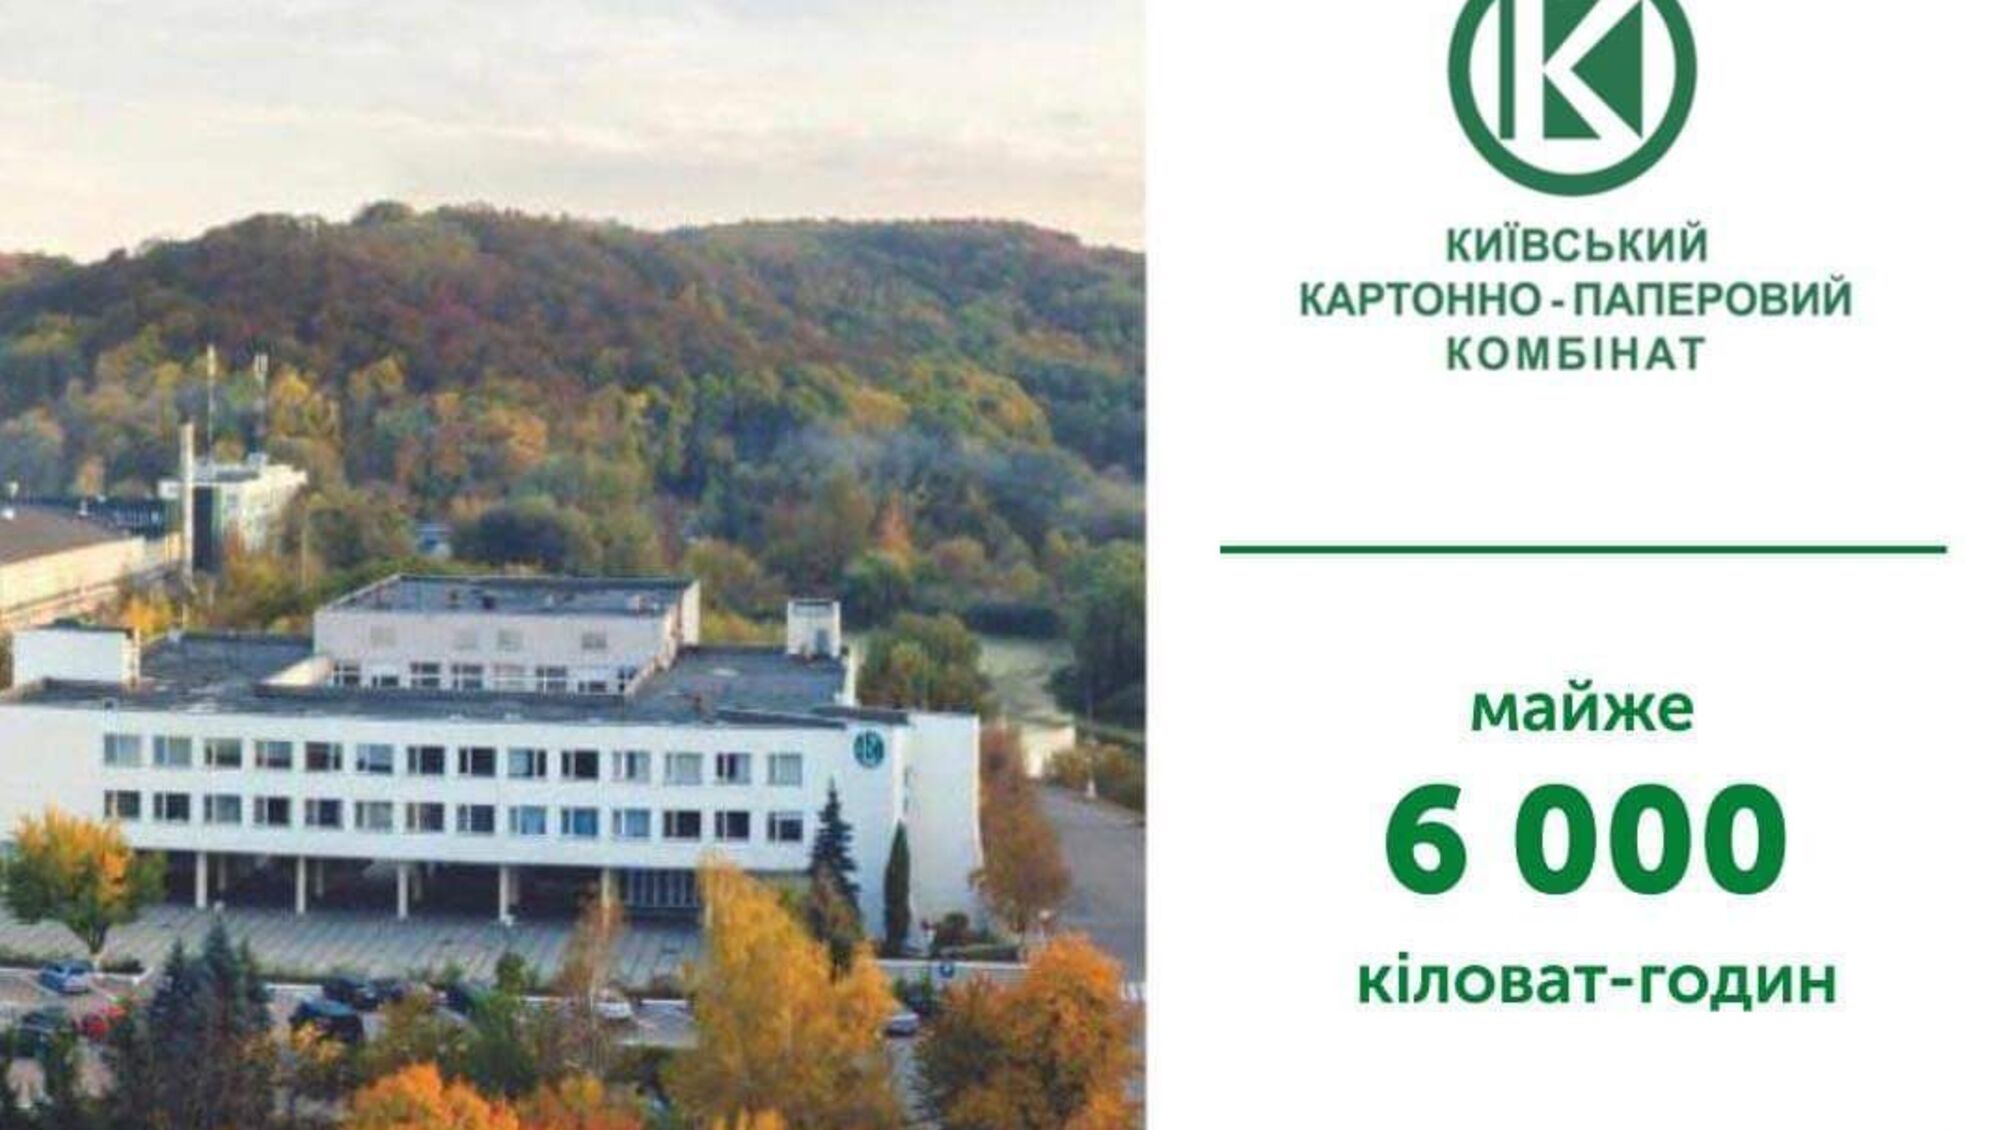 Киевский КБК за полмесяца сохранил почти 6 тысяч киловатт-часов в рамках энергосбережения